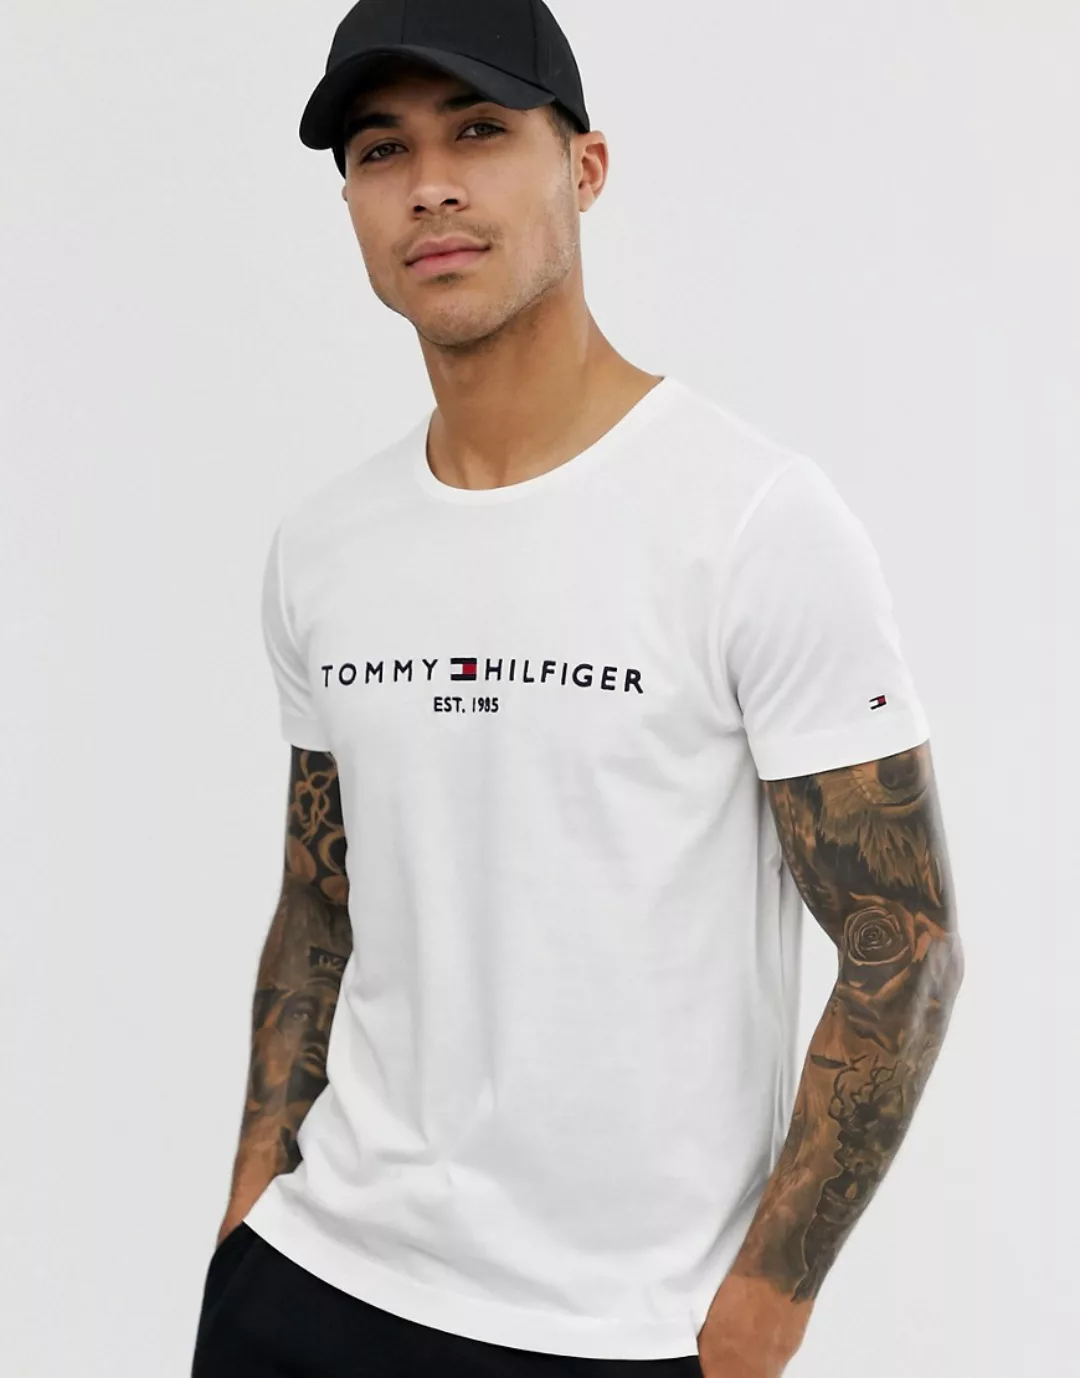 Tommy Hilfiger T-Shirt TOMMY FLAG HILFIGER TEE günstig online kaufen